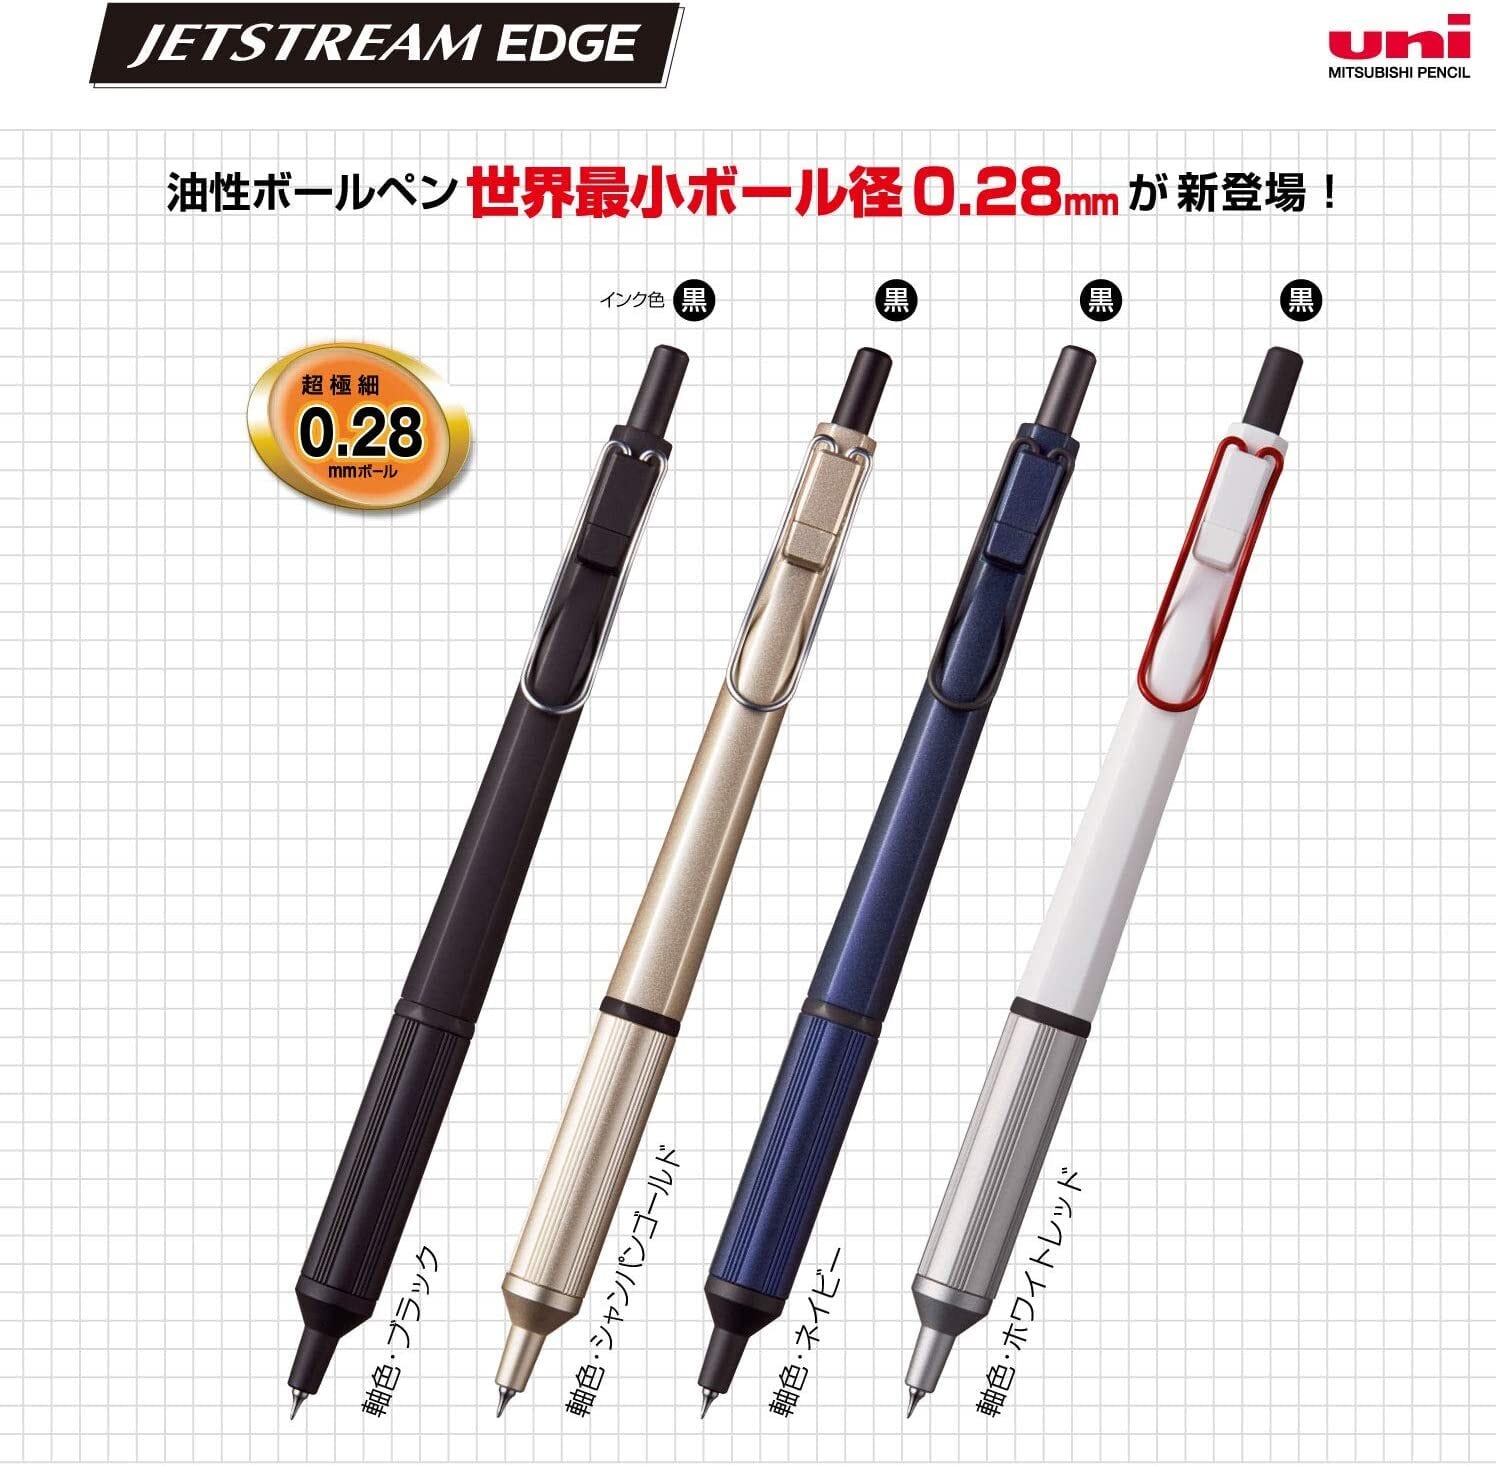 三菱鉛筆 ボールペン替芯 ジェットストリームエッジ 0.28 独特の素材